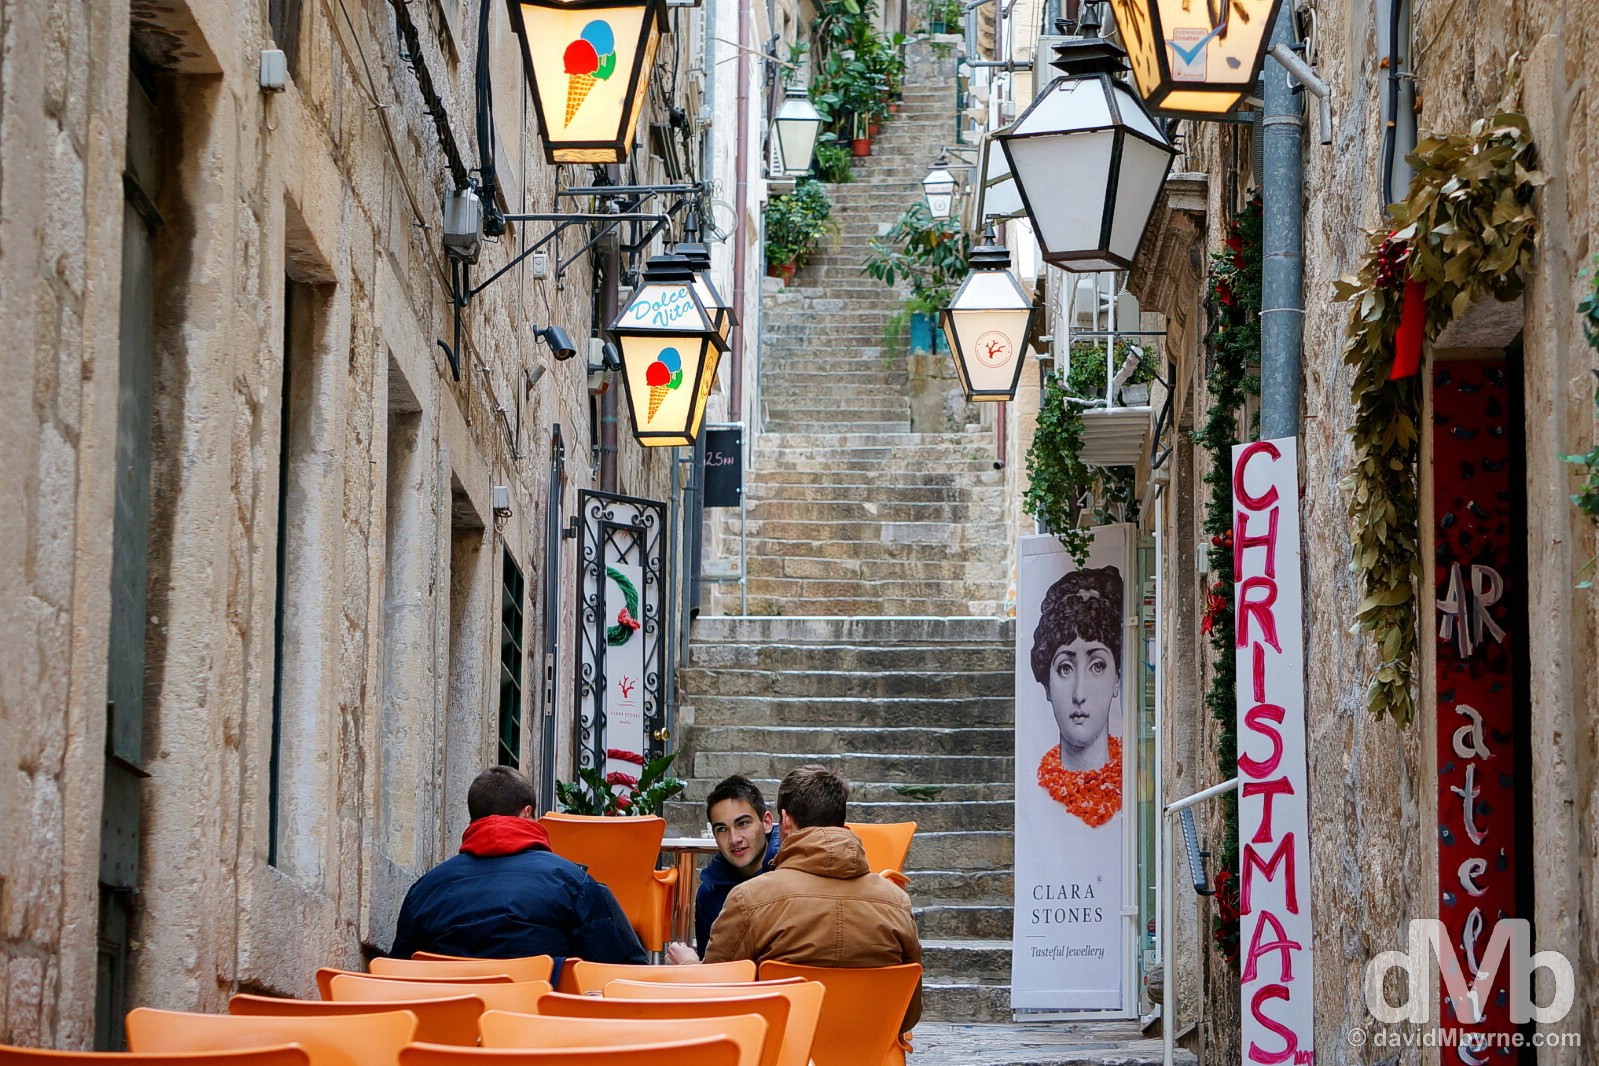 Naljeskoviceva ul, Old Town, Dubrovnik, Croatia. April 7, 2015.